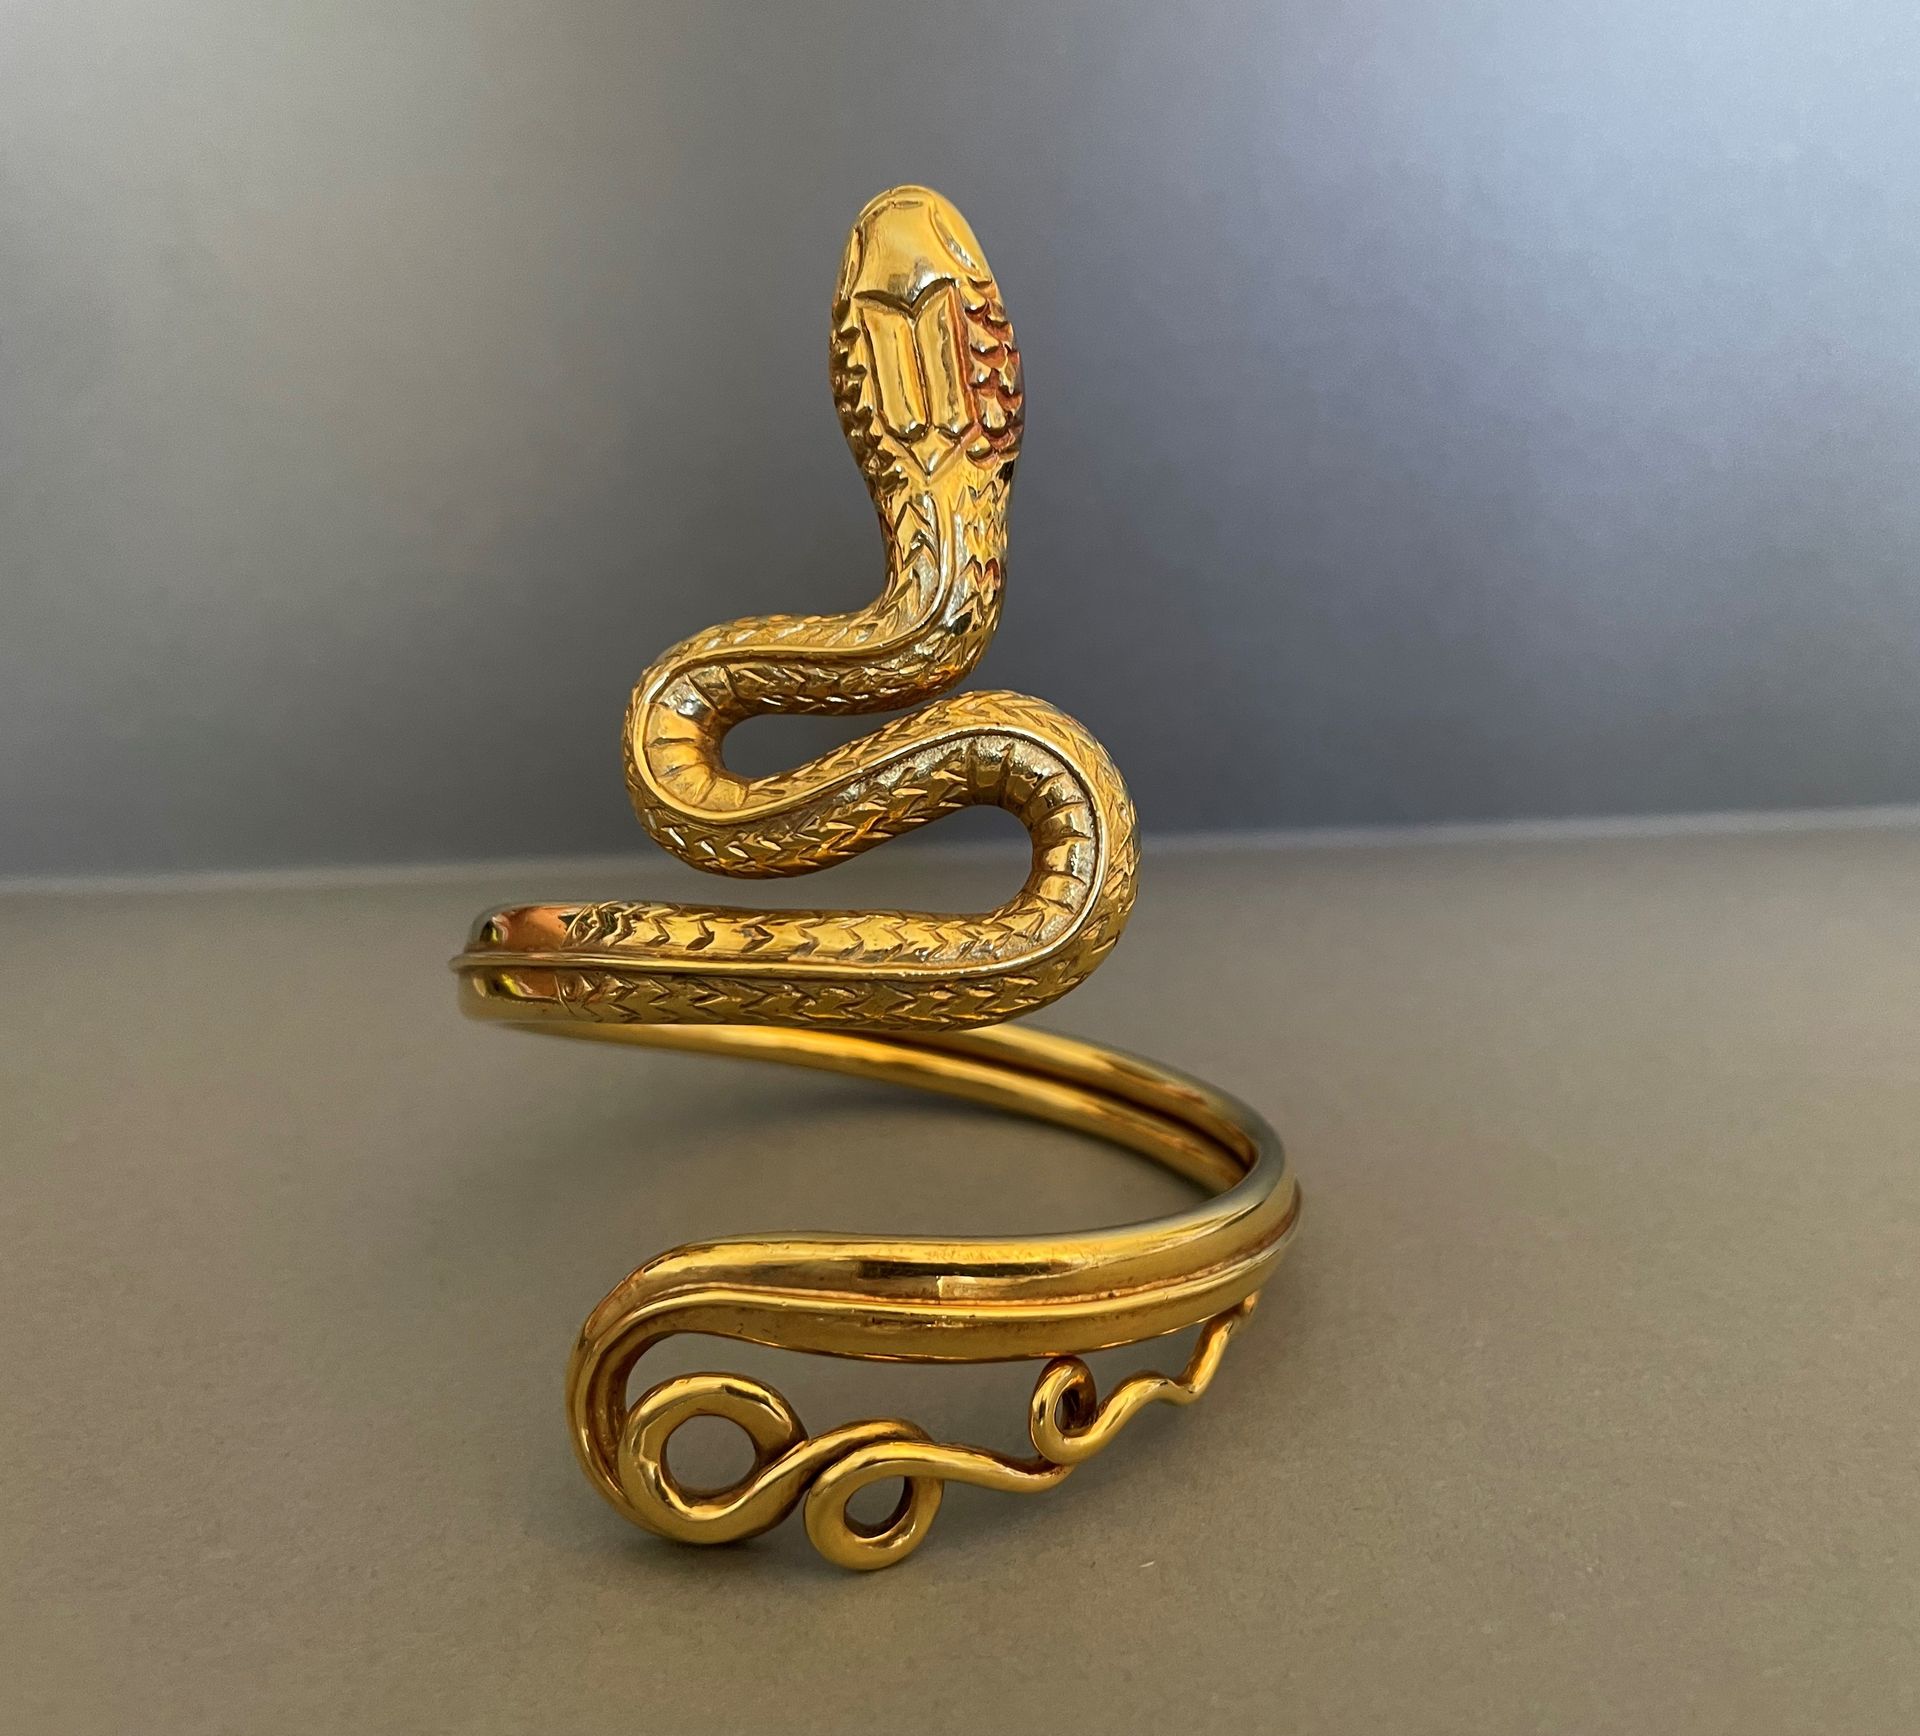 Null Armband in Form einer Schlange aus Gelbgold.
Gewicht: 49,2 g. - TP: ca. 16,&hellip;